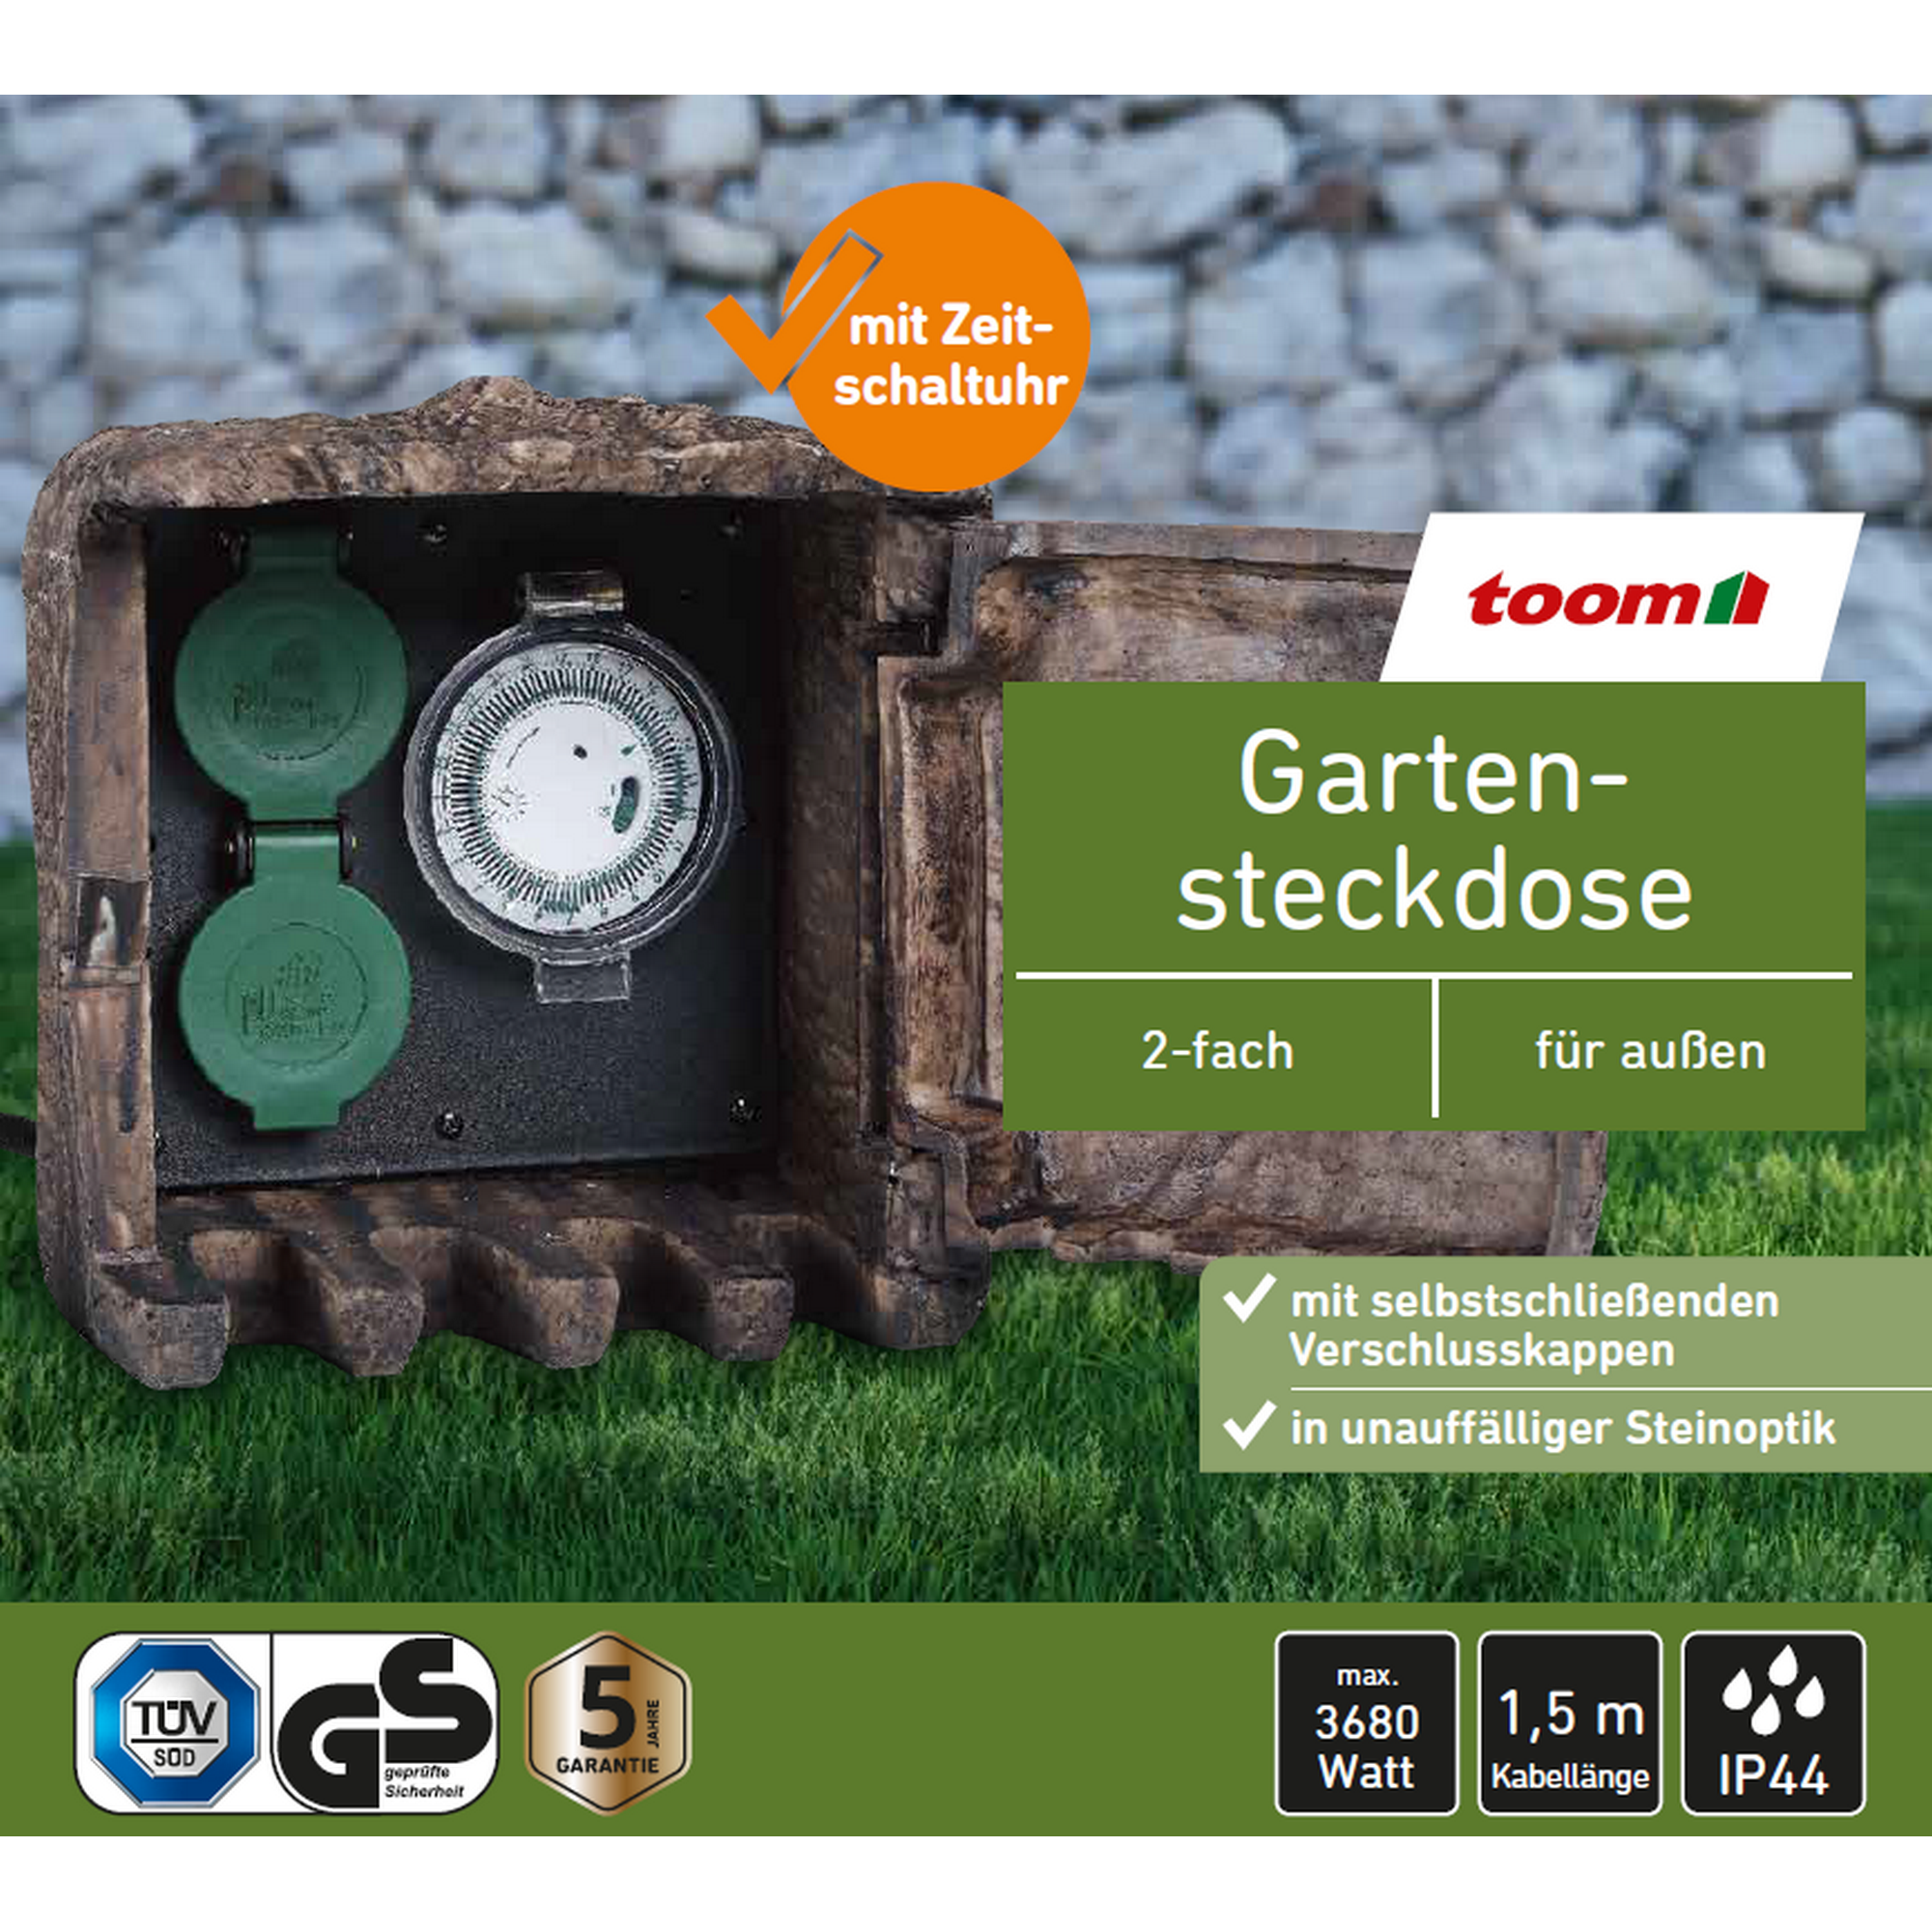 Gartensteckdose mit Zeitschaltuhr Steinoptik grau 2-fach + product picture